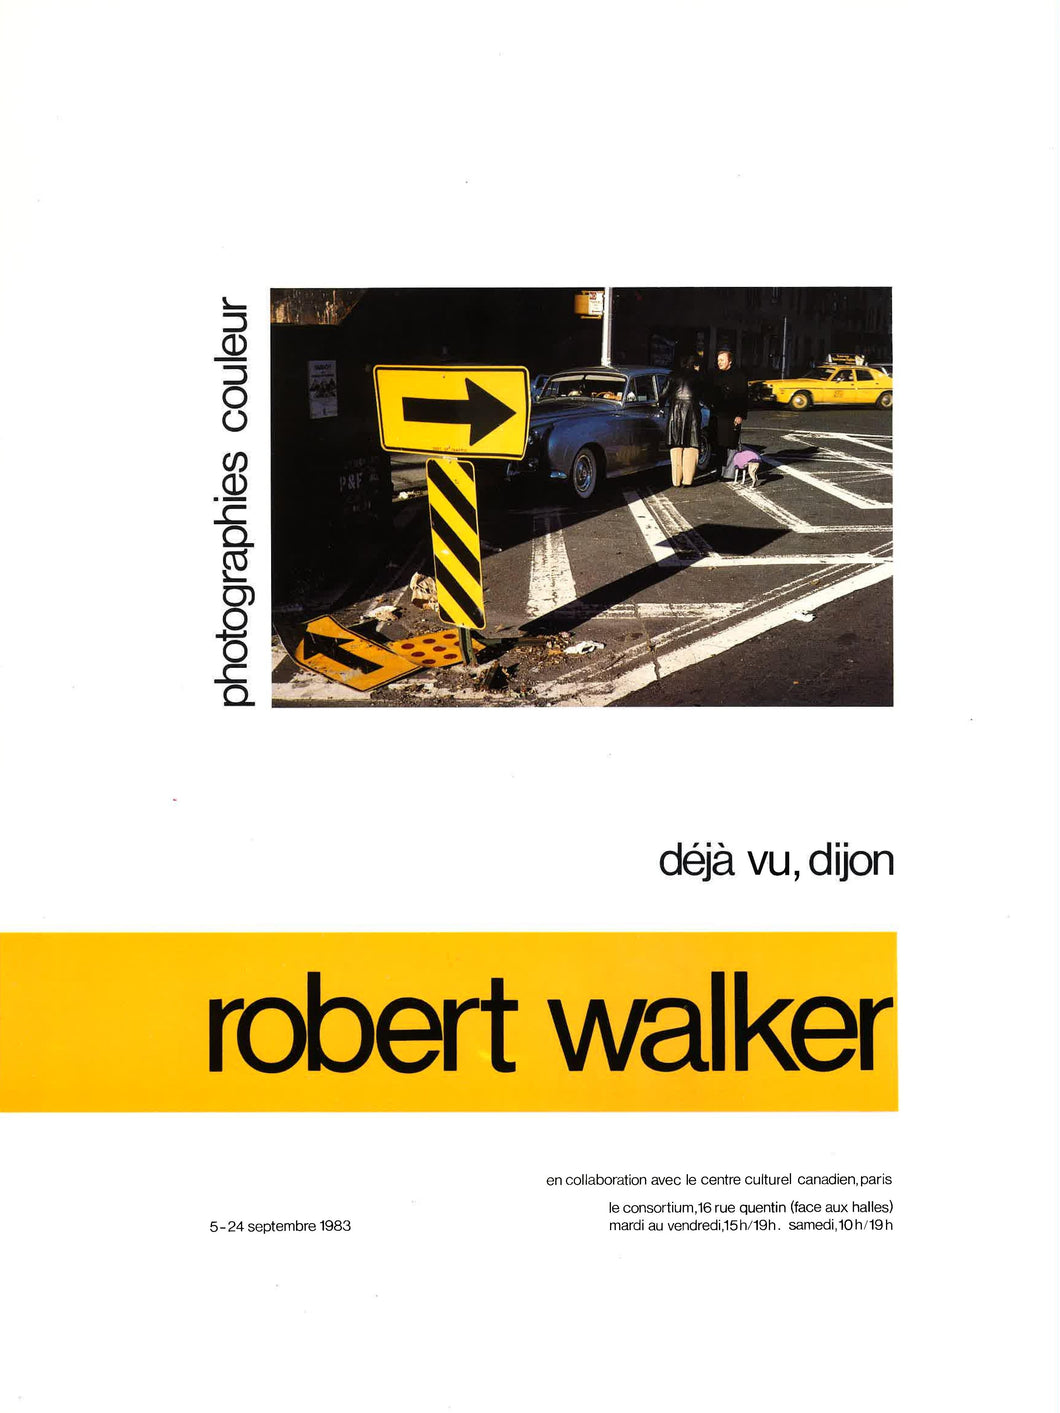 Robert Walker, <br>1983